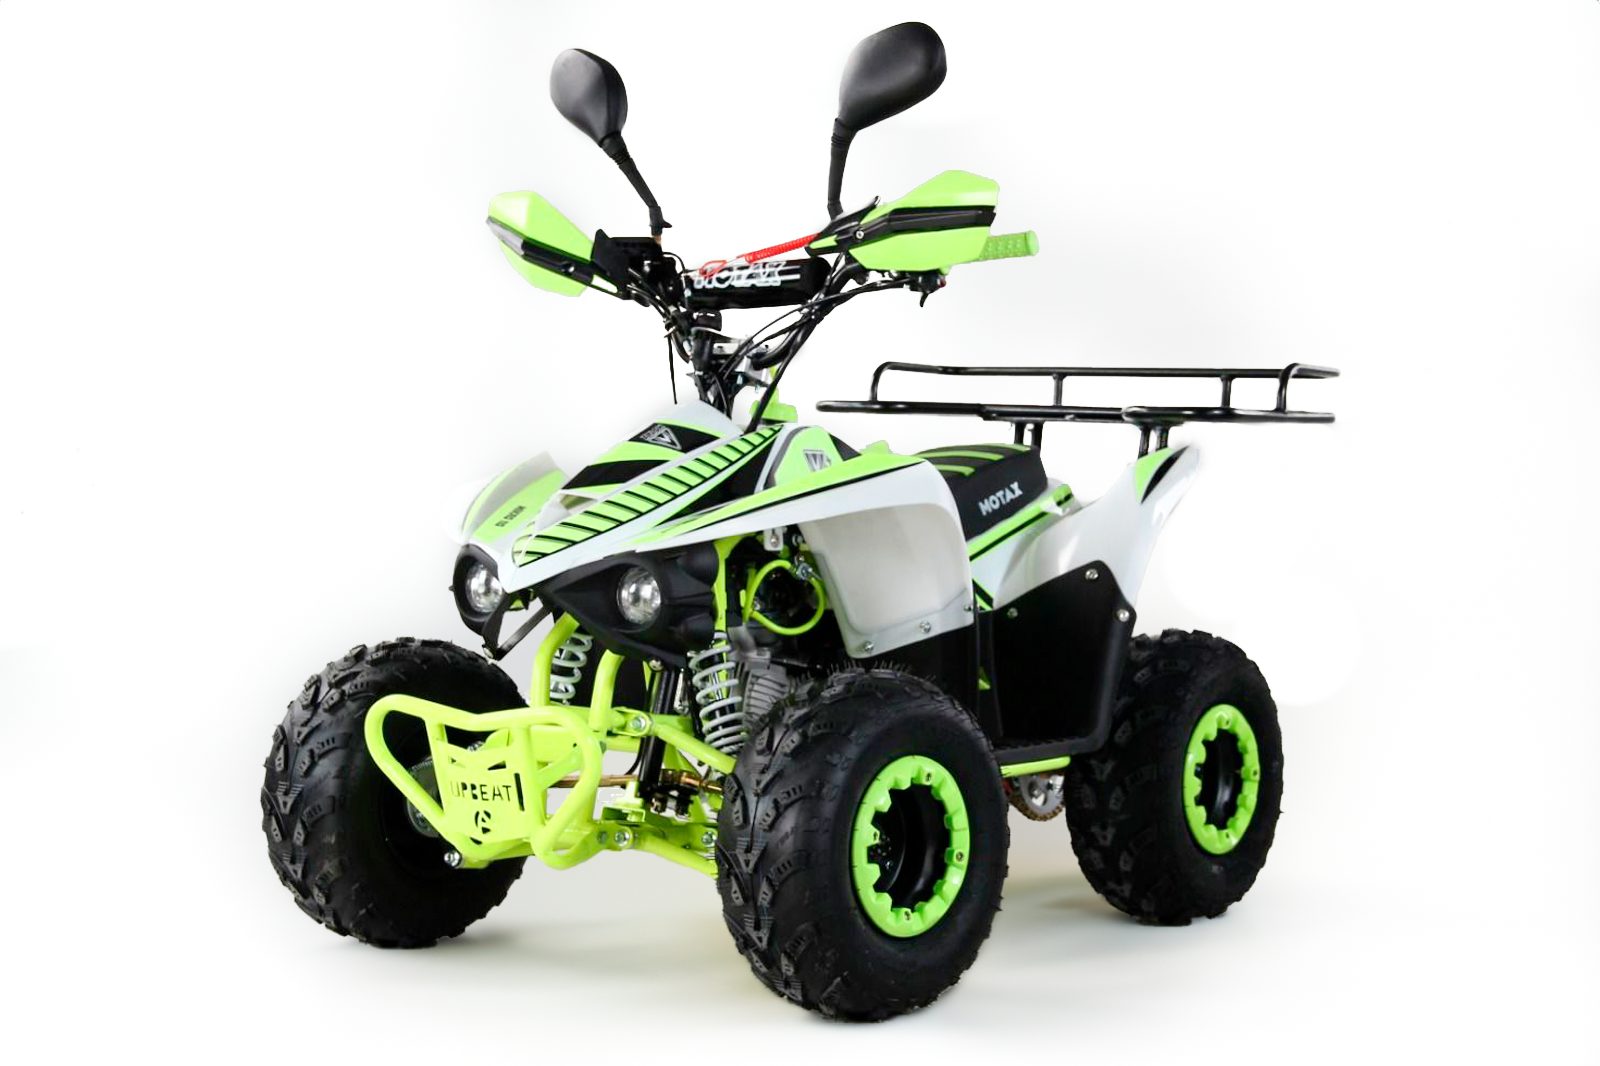 Квадроцикл бензиновый, подростковый MOTAX MIKRO 110 NEW, зеленый, нагрузка до 100кг, скорость до 65 км/час